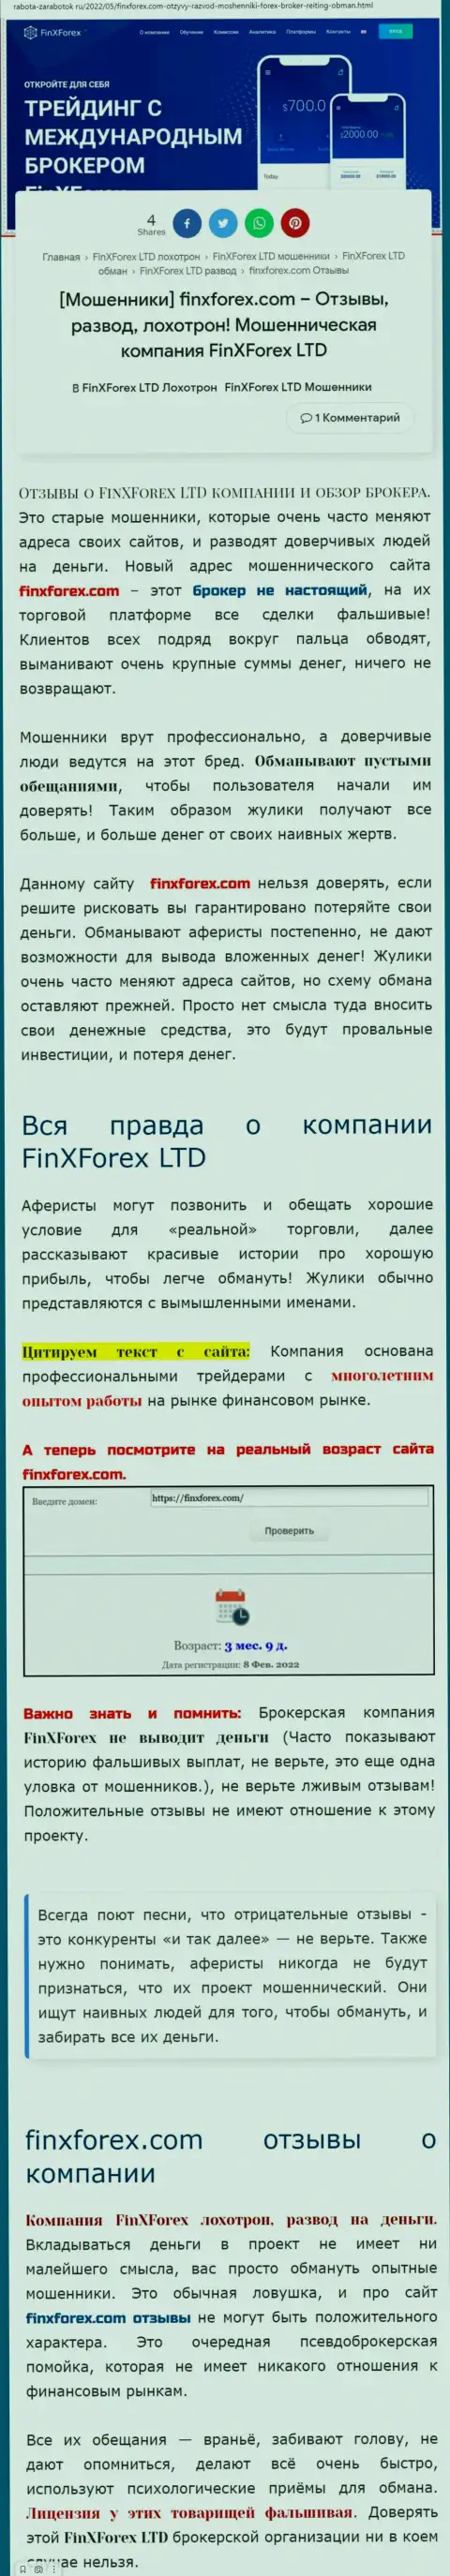 Автор обзора о ФинХФорекс заявляет, что в компании Фин Икс Форекс мошенничают